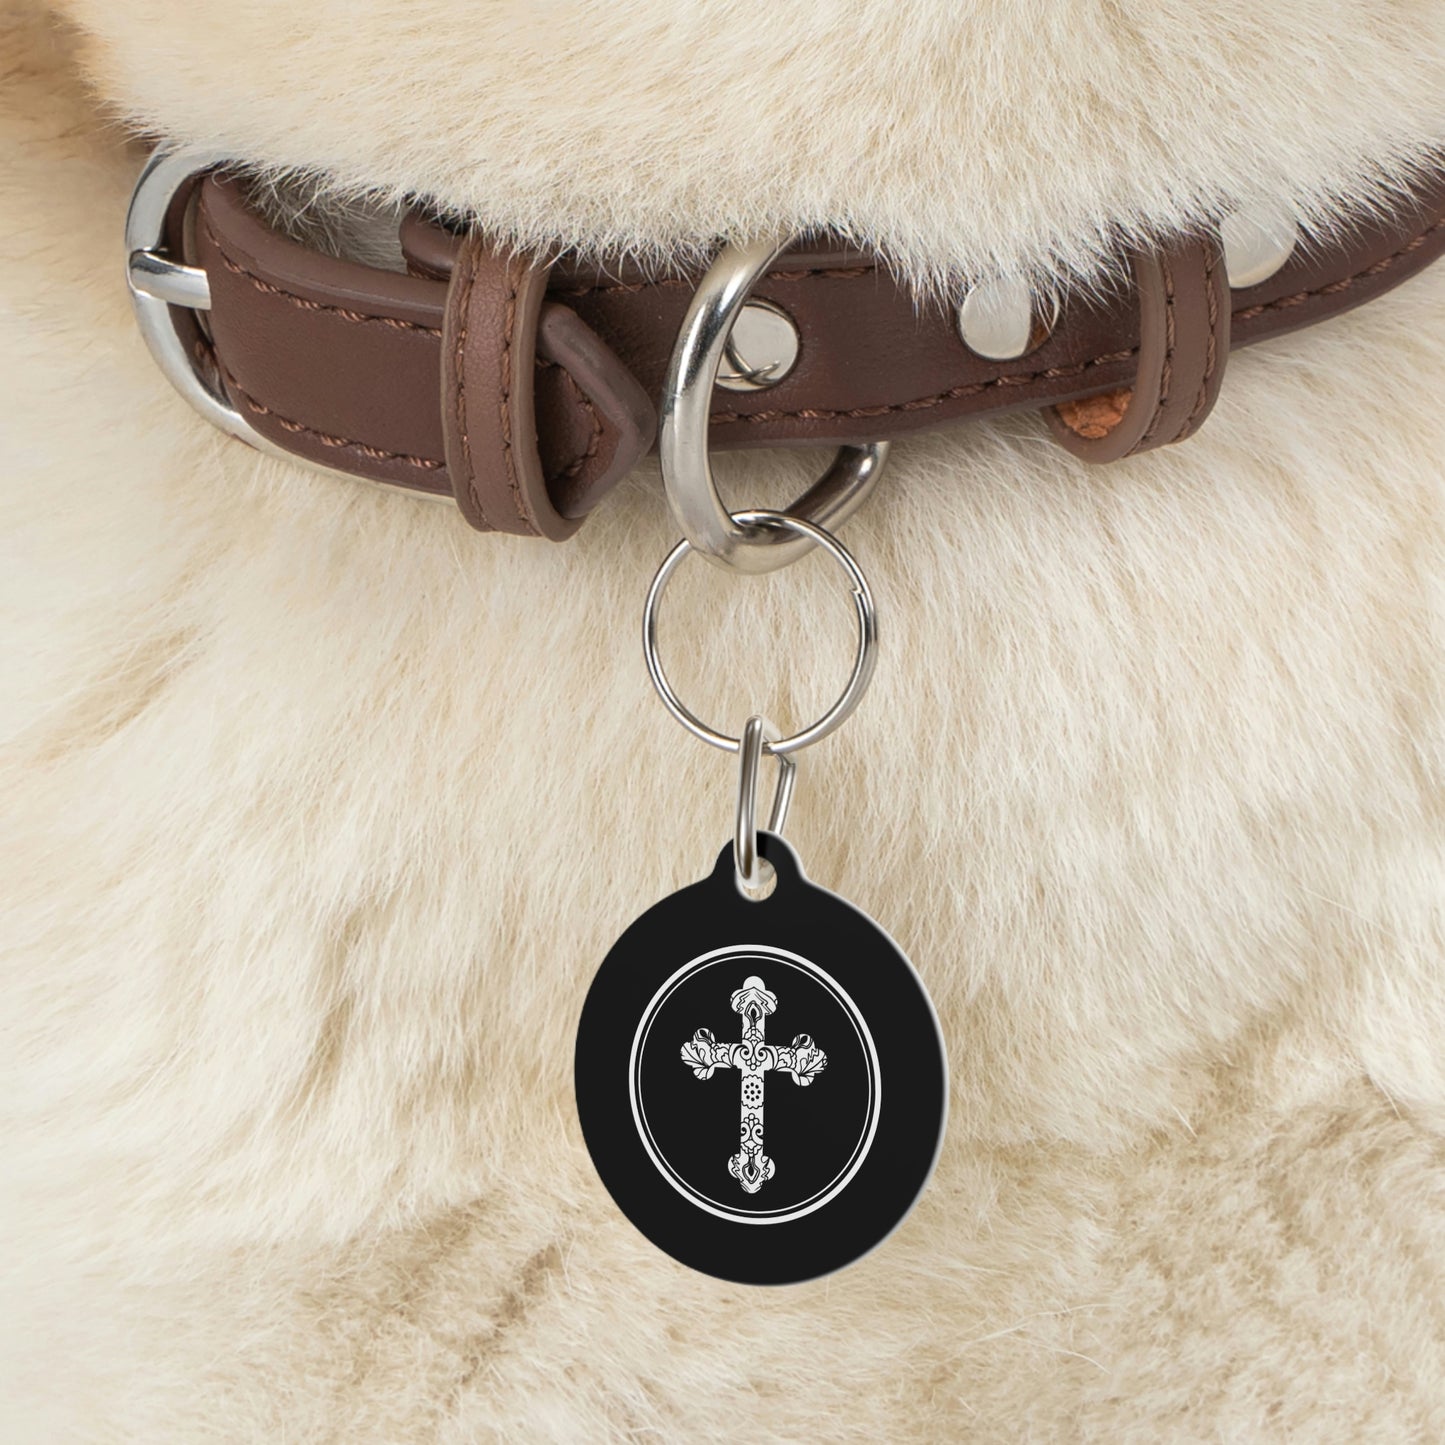 Serbian Orthodox Cross Pet Tag